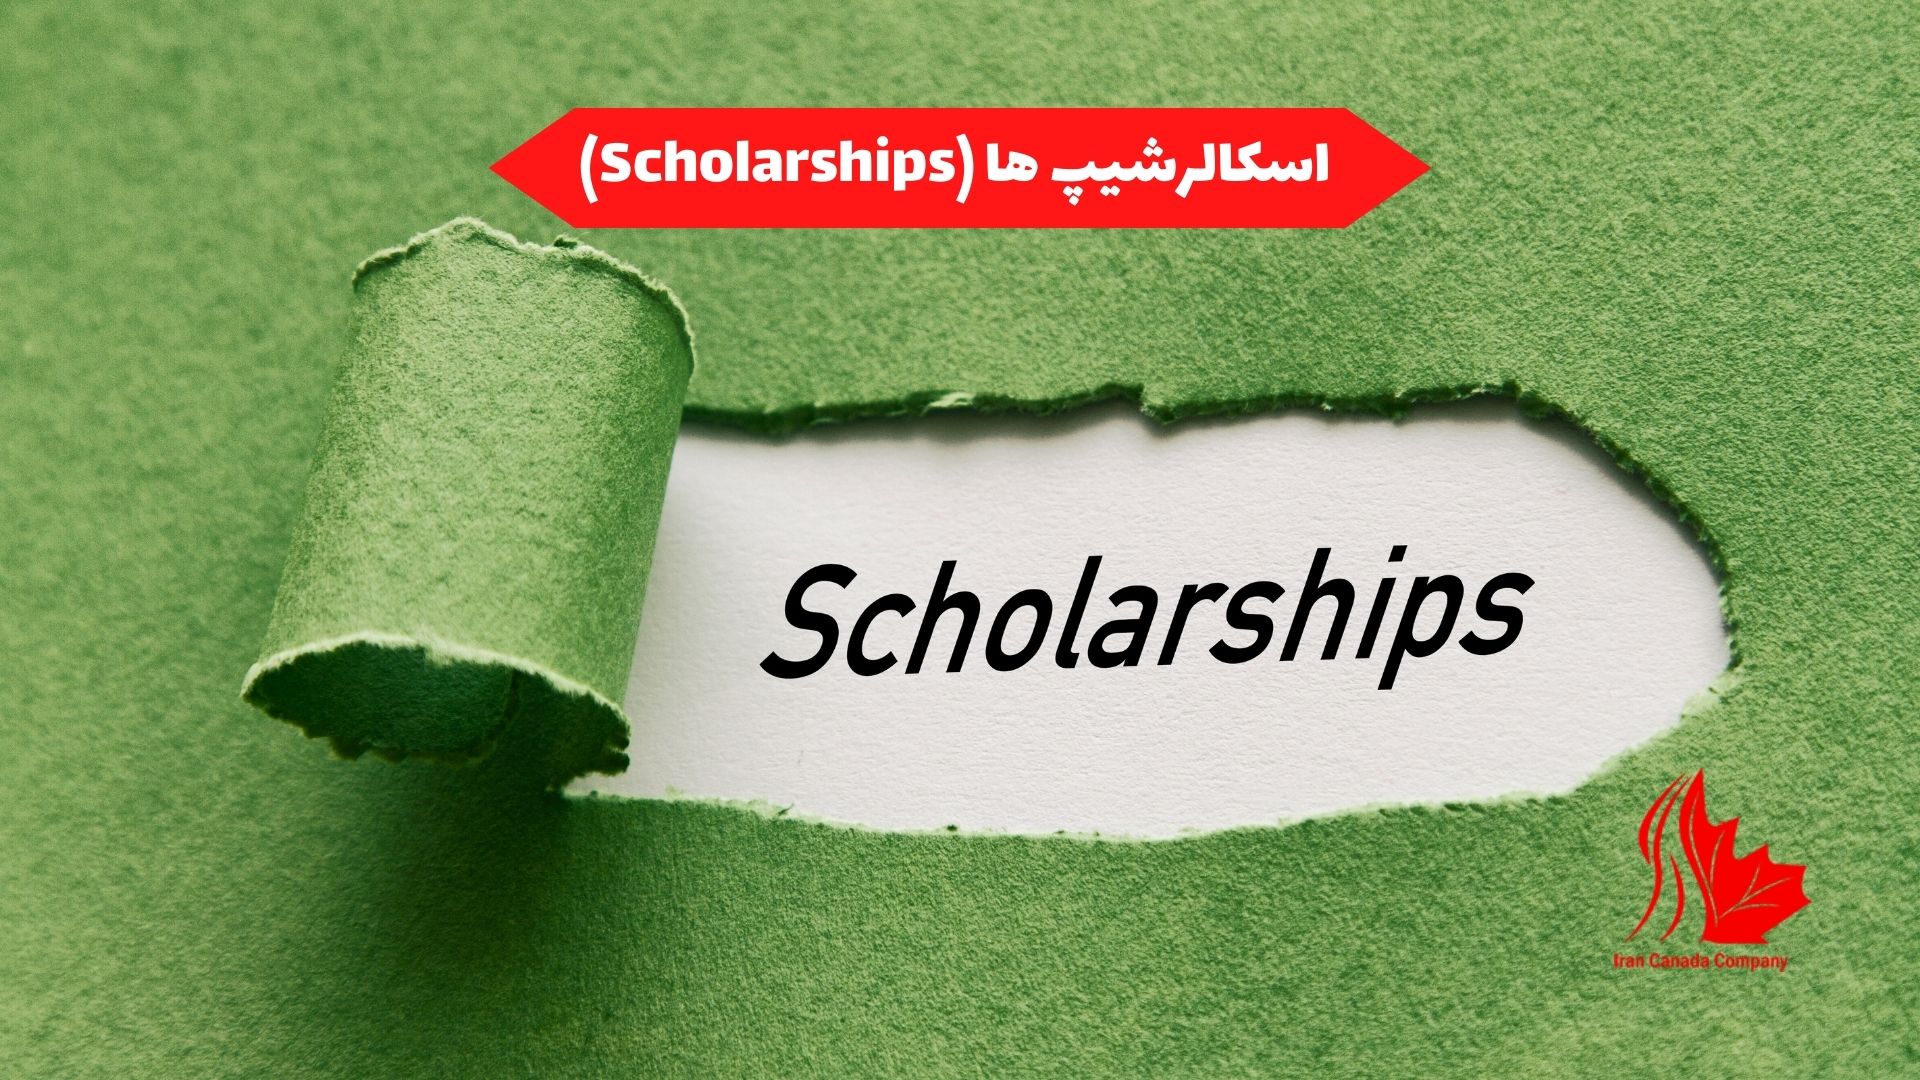 اسکالرشیپ ها :(Scholarships)